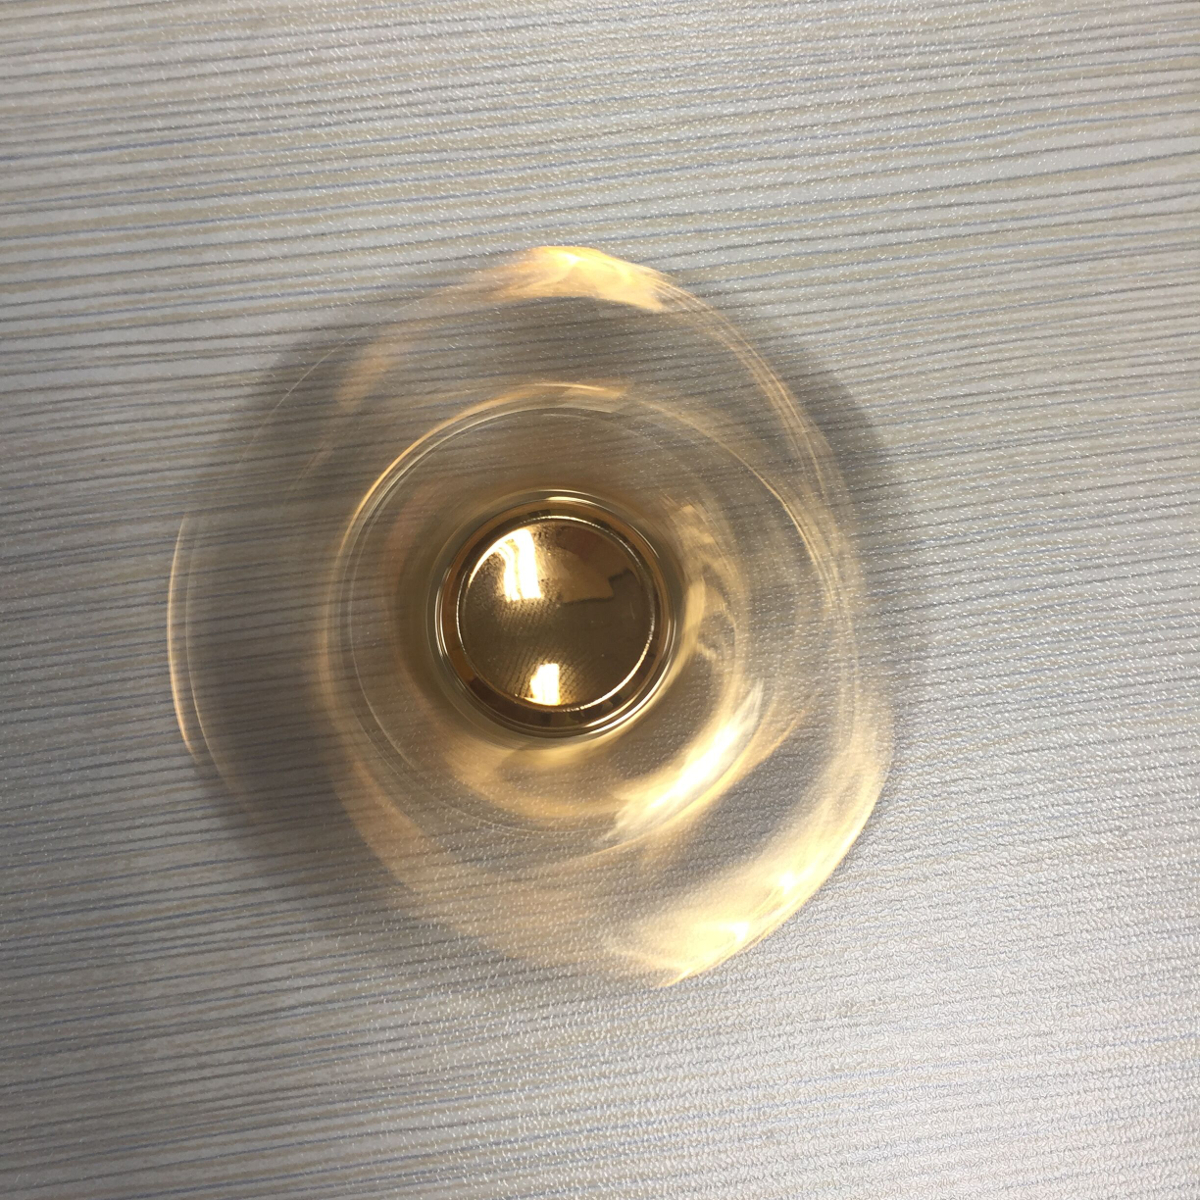 Aluminum Alloy Fidget Hand Spinner Gold Tri-Spinner Fidget